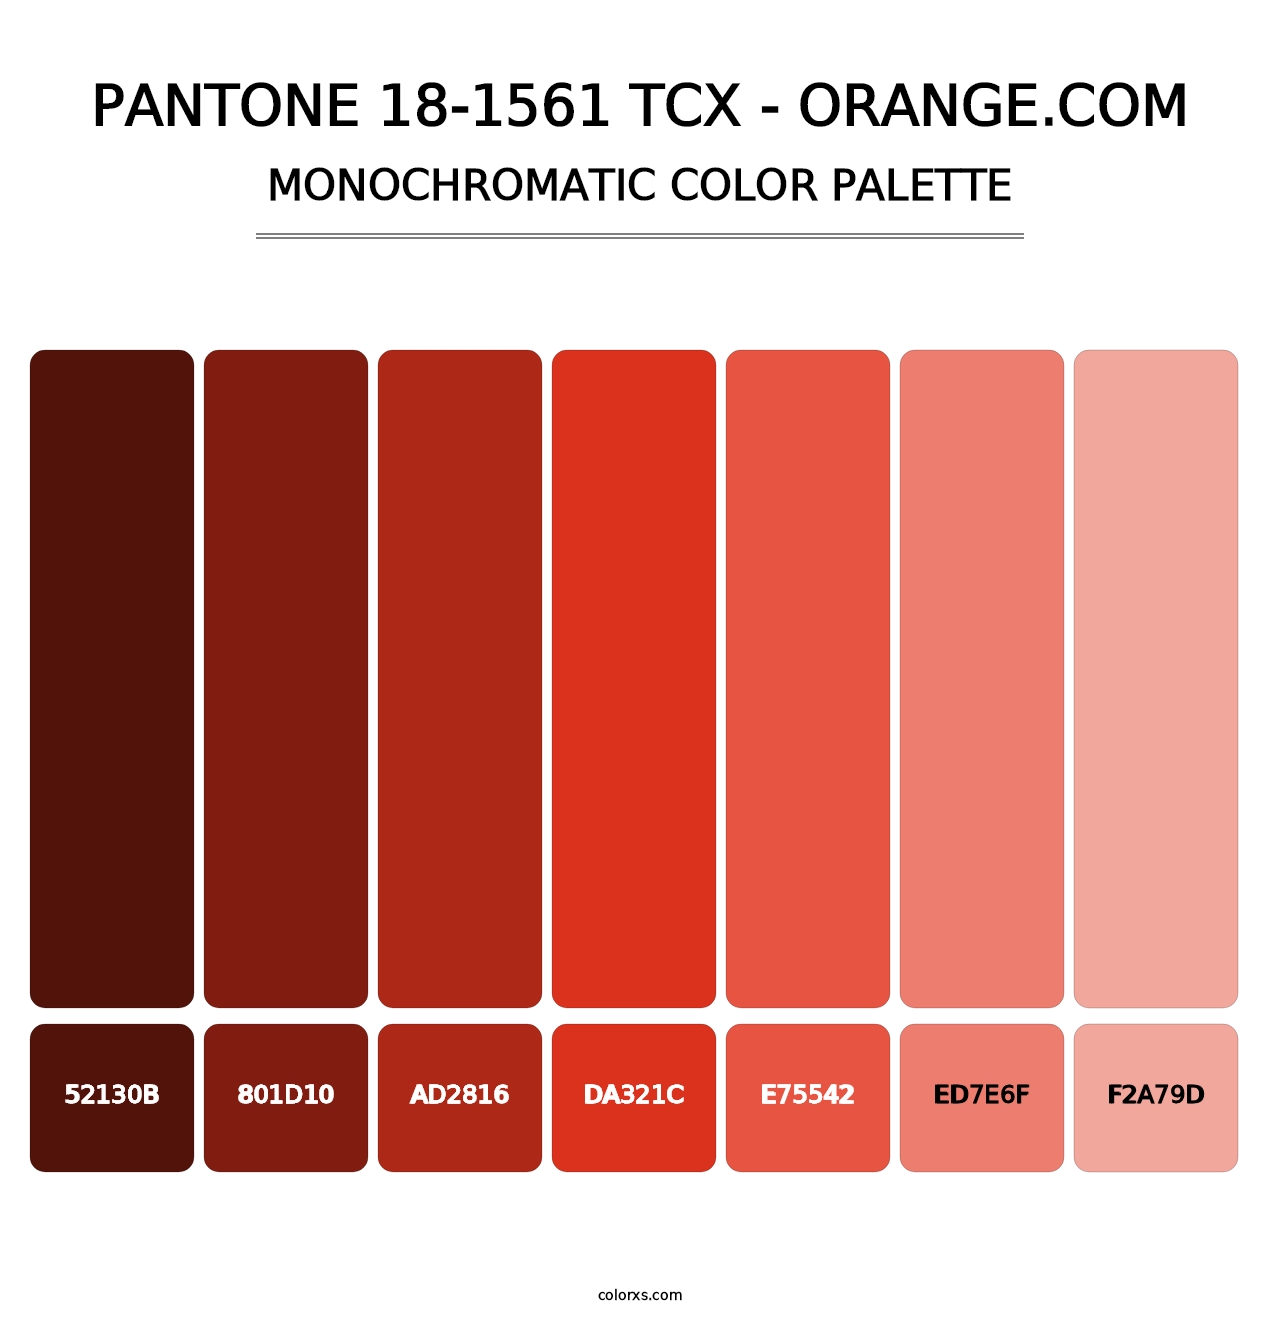 PANTONE 18-1561 TCX - Orange.com - Monochromatic Color Palette